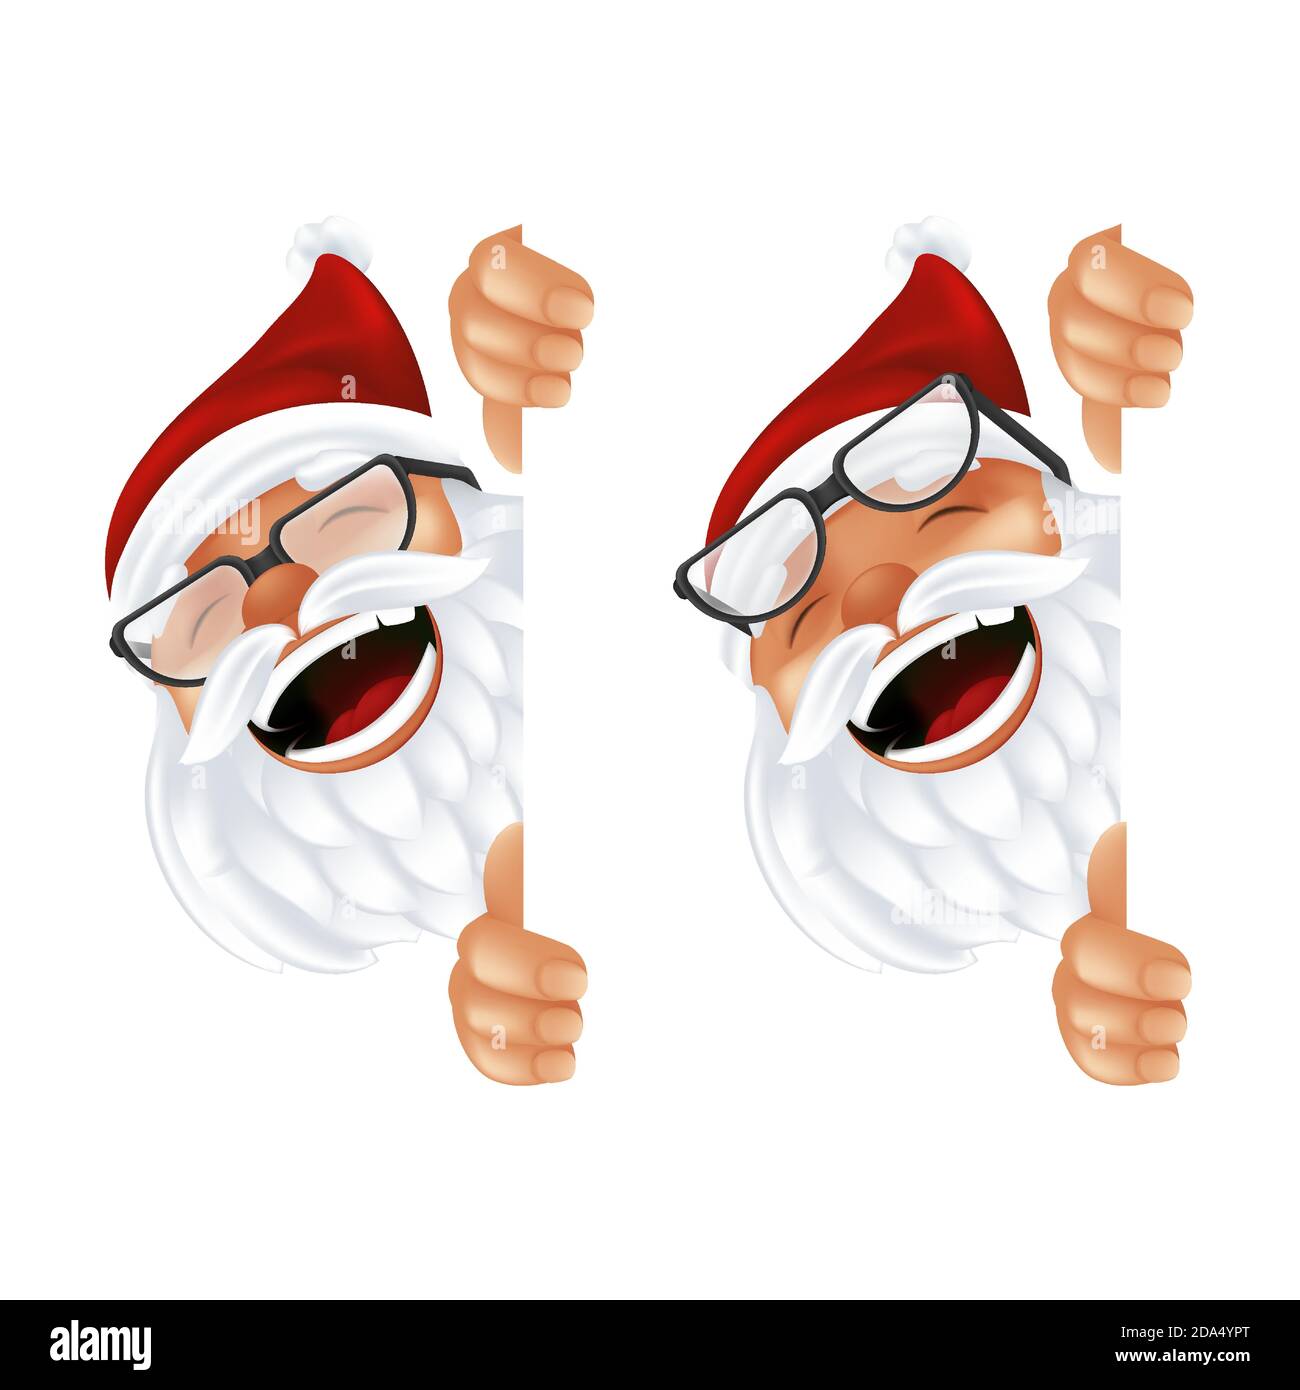 Drôle de dessin animé Santa Claus dans un chapeau rouge et des lunettes. Riant et souriant personnage de Noël en costume traditionnel peeking de derrière le vertical c Illustration de Vecteur